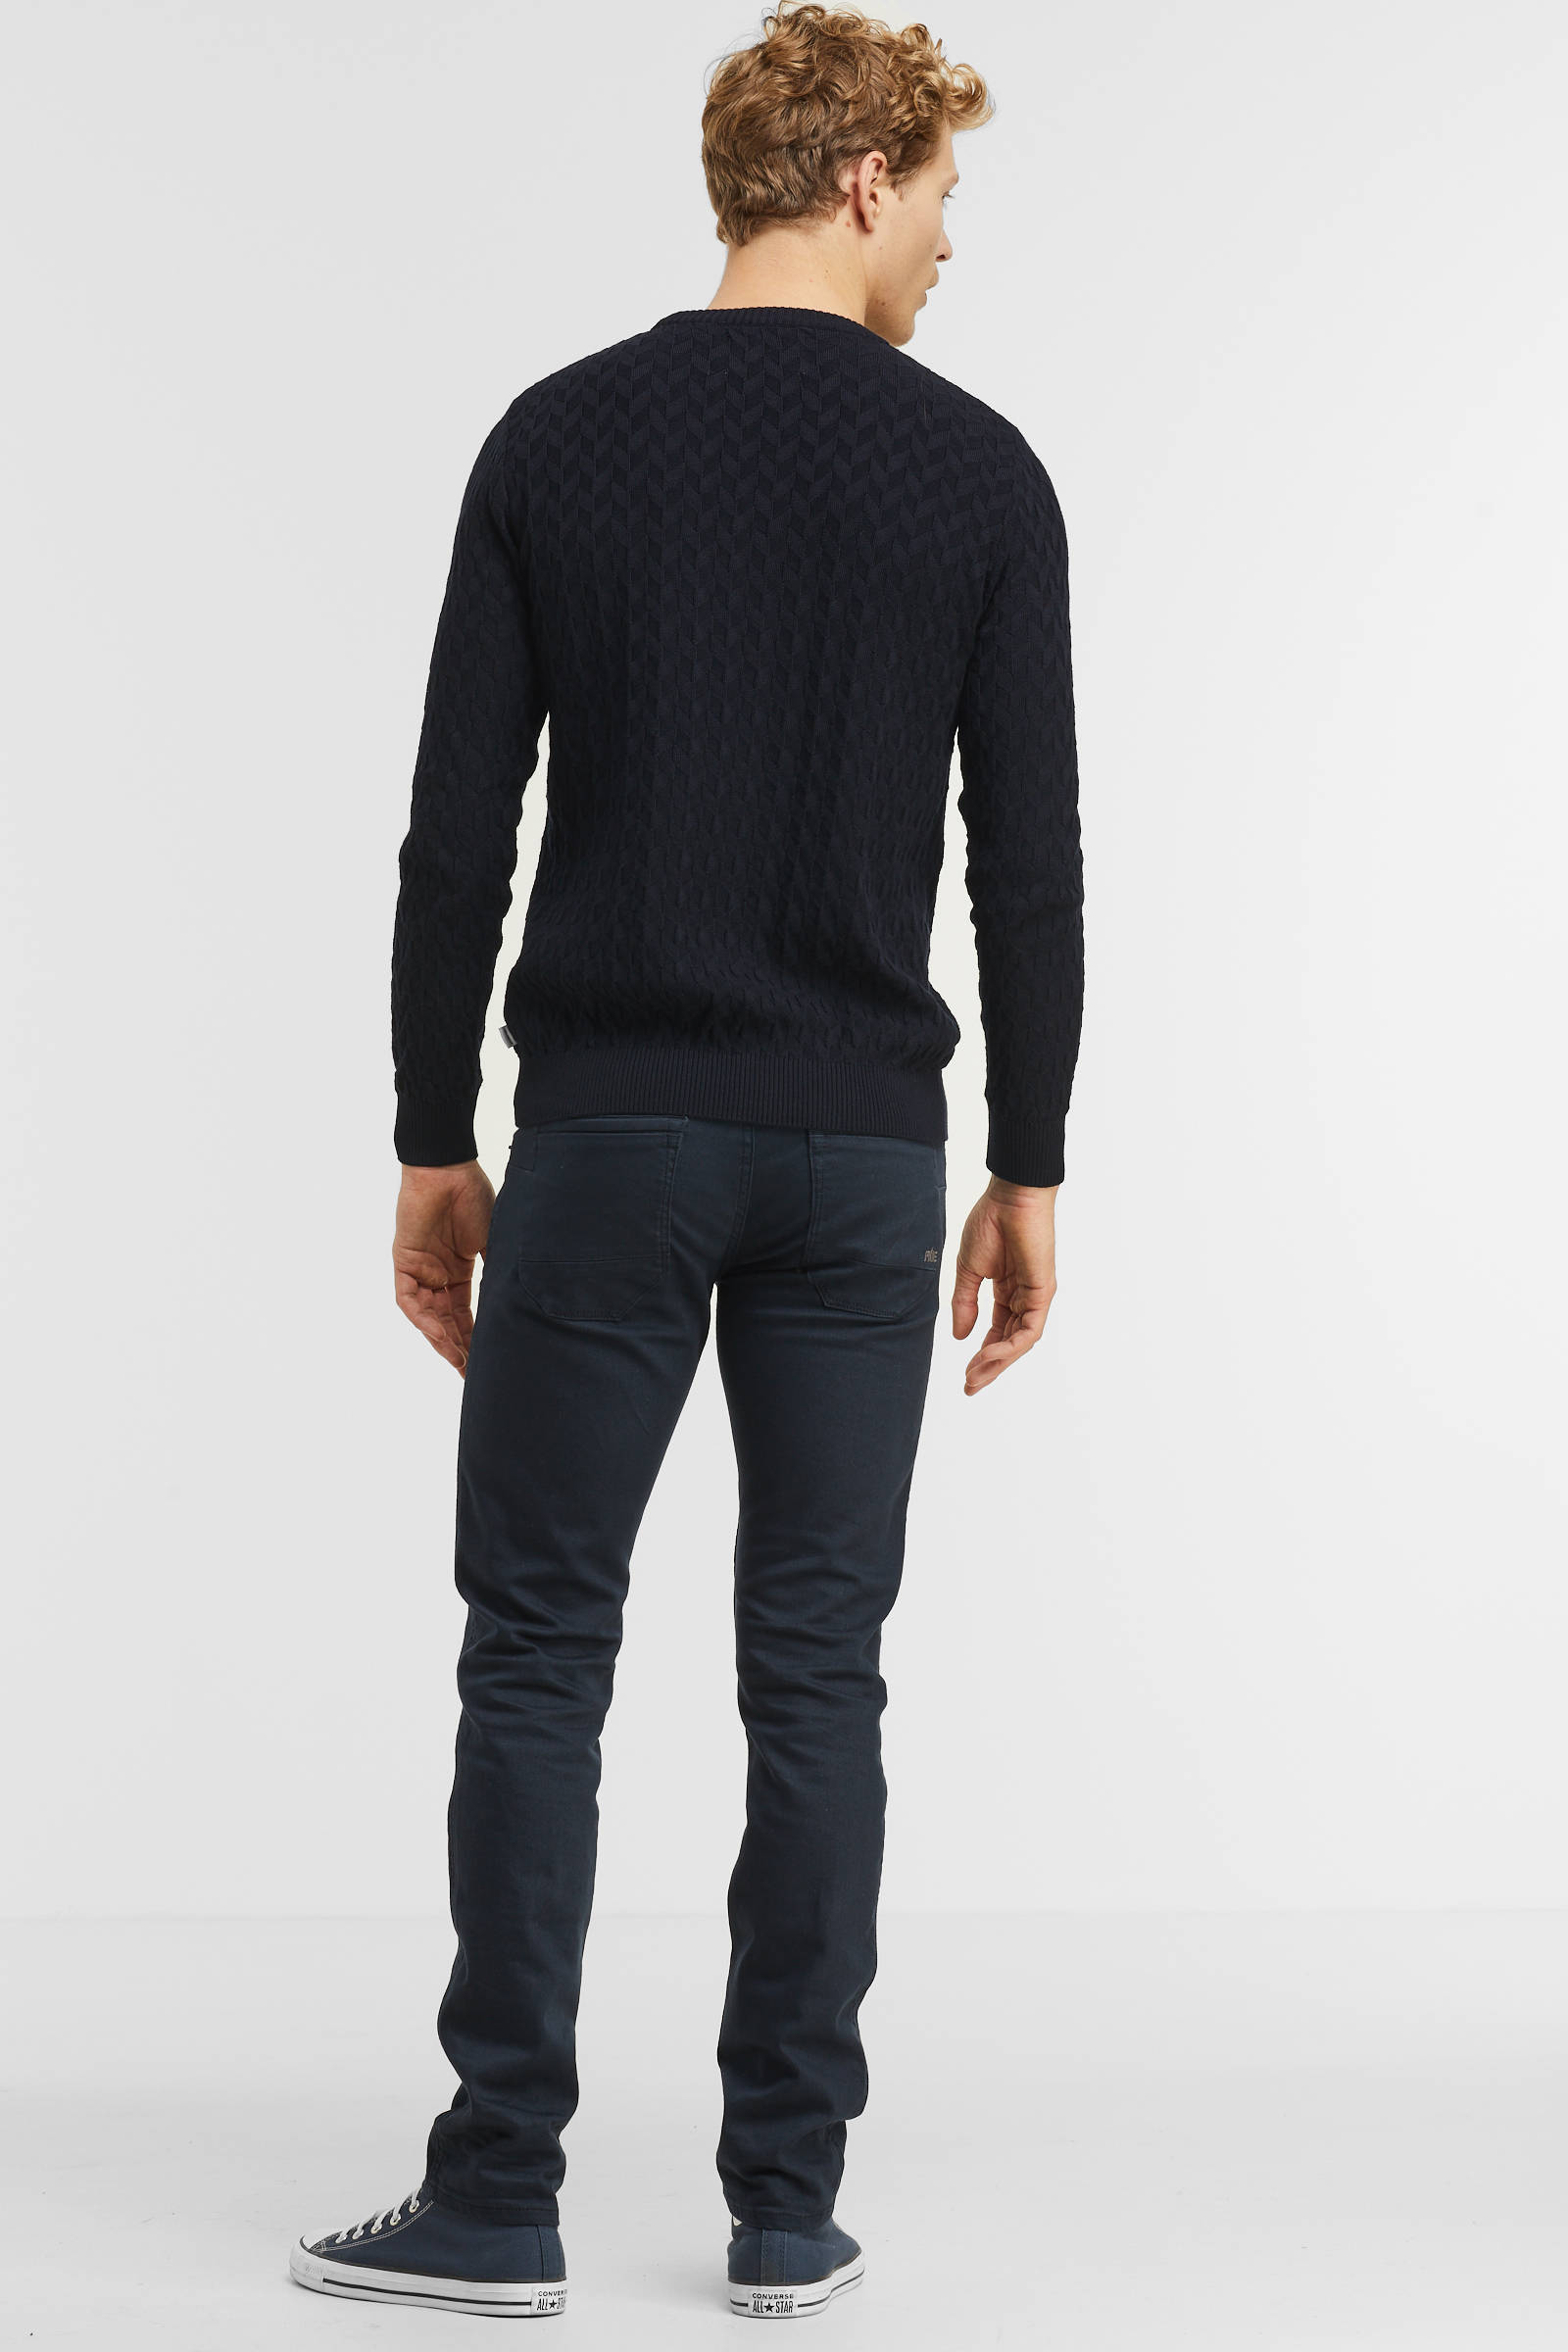 PME Legend coated slim fit broek Nightflight coated 5281 donkerblauw online kopen